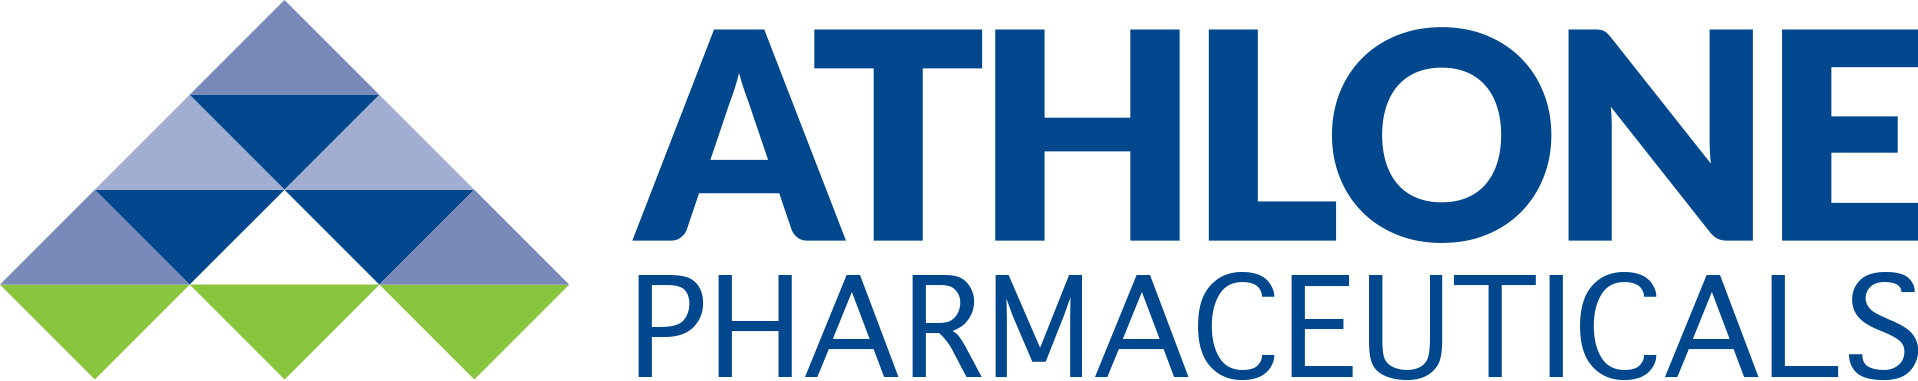 Athlone Pharmaceuticals